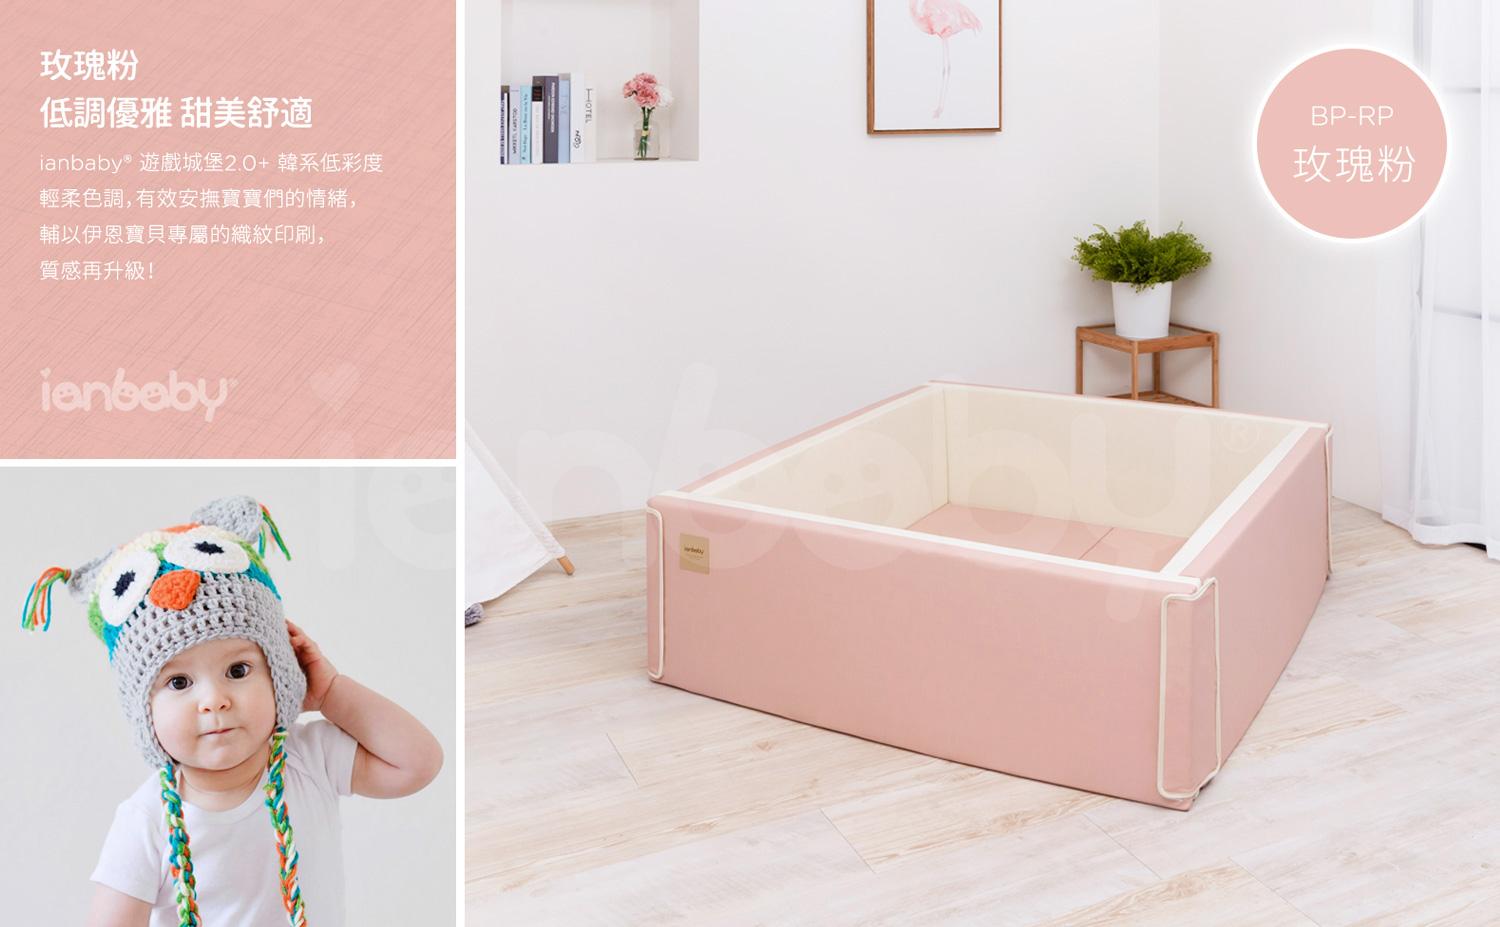 M-BP_34.jpg/ ianbaby 韓製遊戲城堡2.0+(玫瑰粉)，低調優雅且甜美舒適的配色，有效安撫寶寶們的情緒。